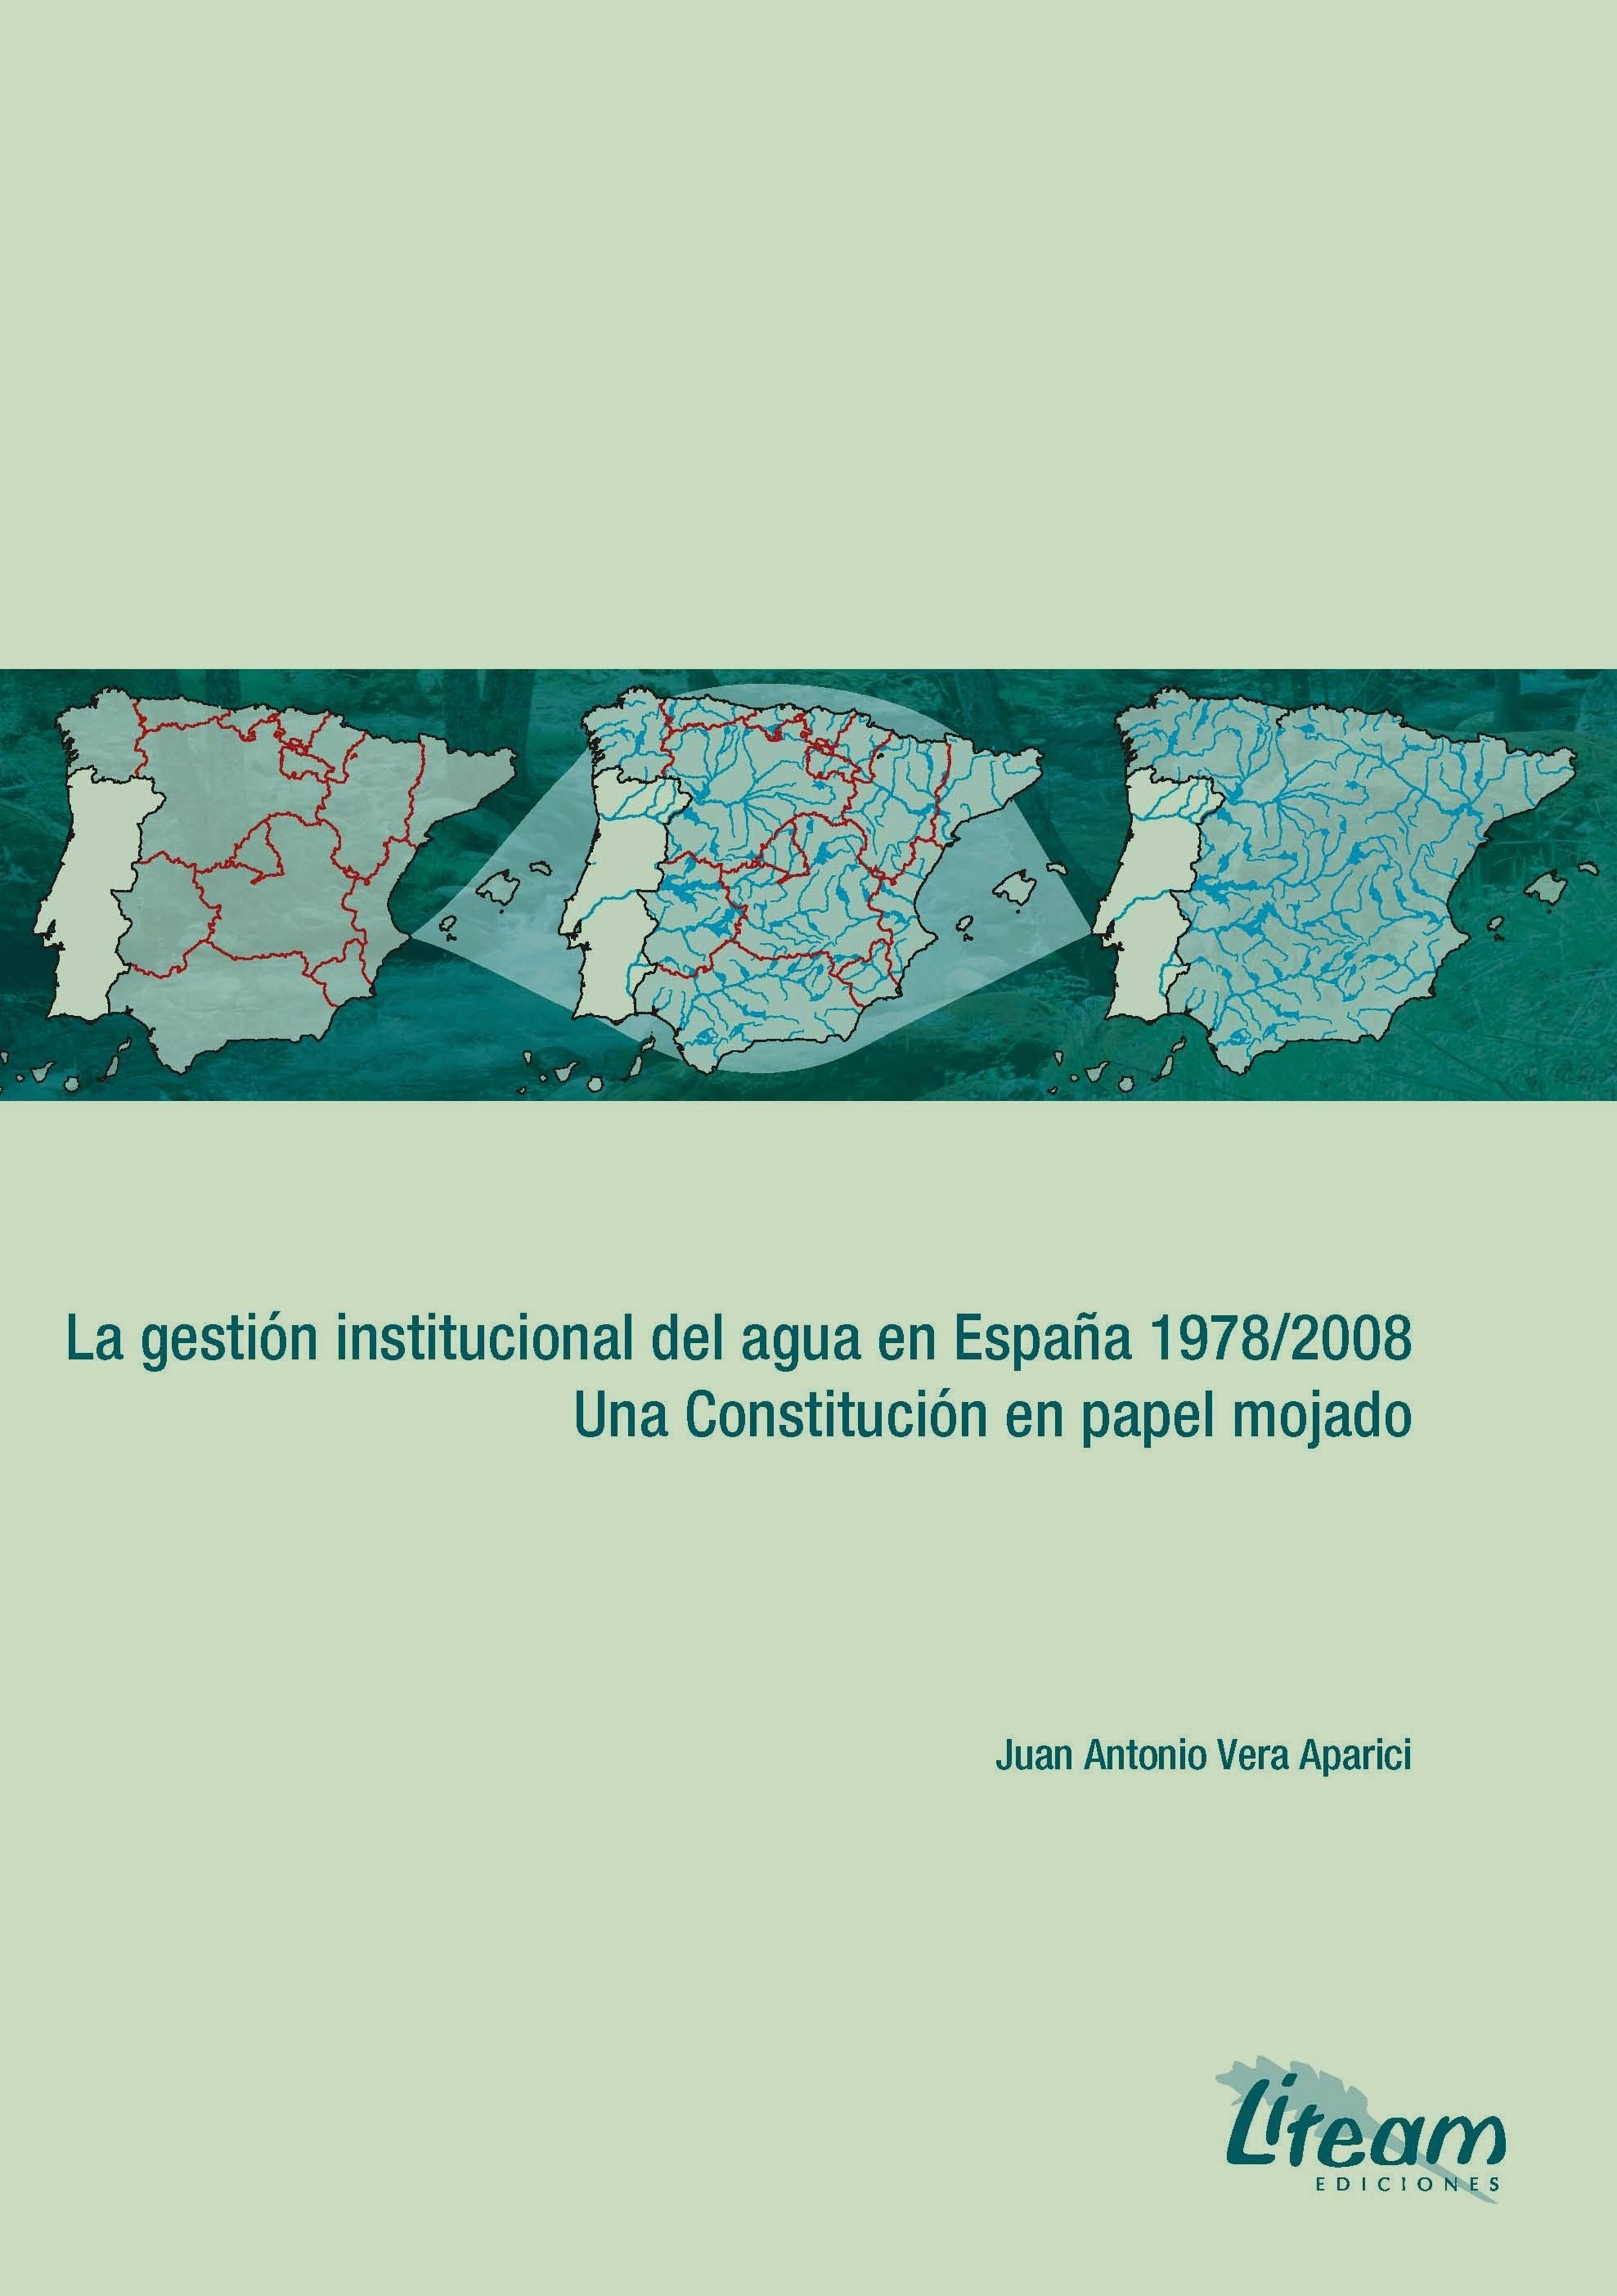 La gestión institucional del agua en España 1978-2008. Una Constitución en papel mojado